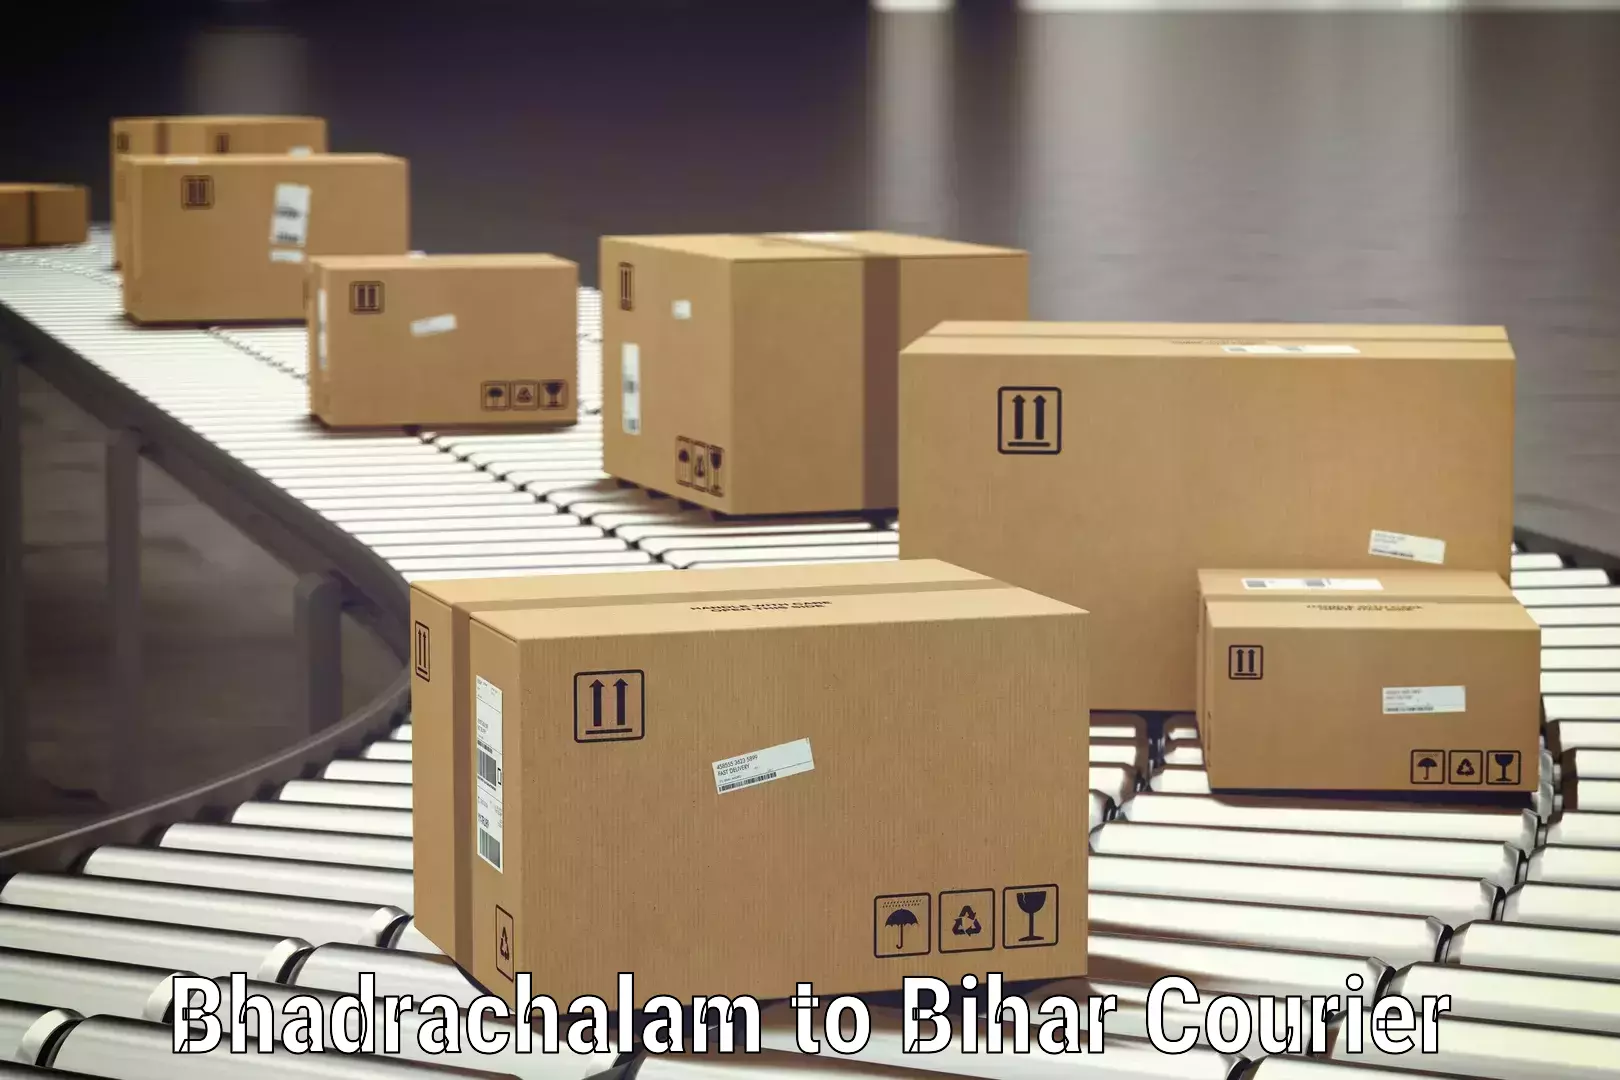 Luggage delivery system Bhadrachalam to Bikramganj